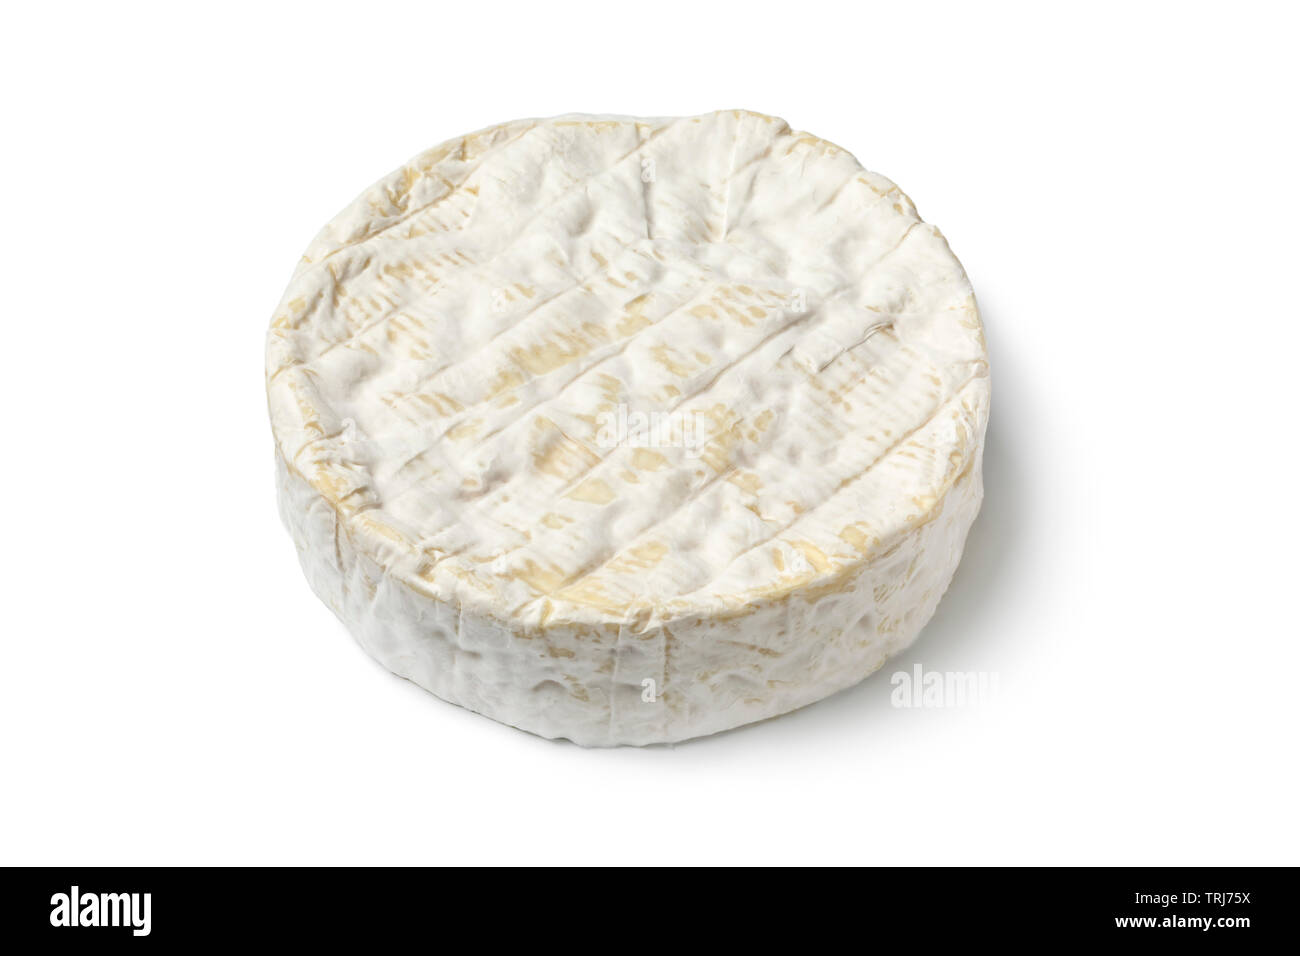 Solo toda la ronda de queso Brie francés aislado sobre fondo blanco. Foto de stock